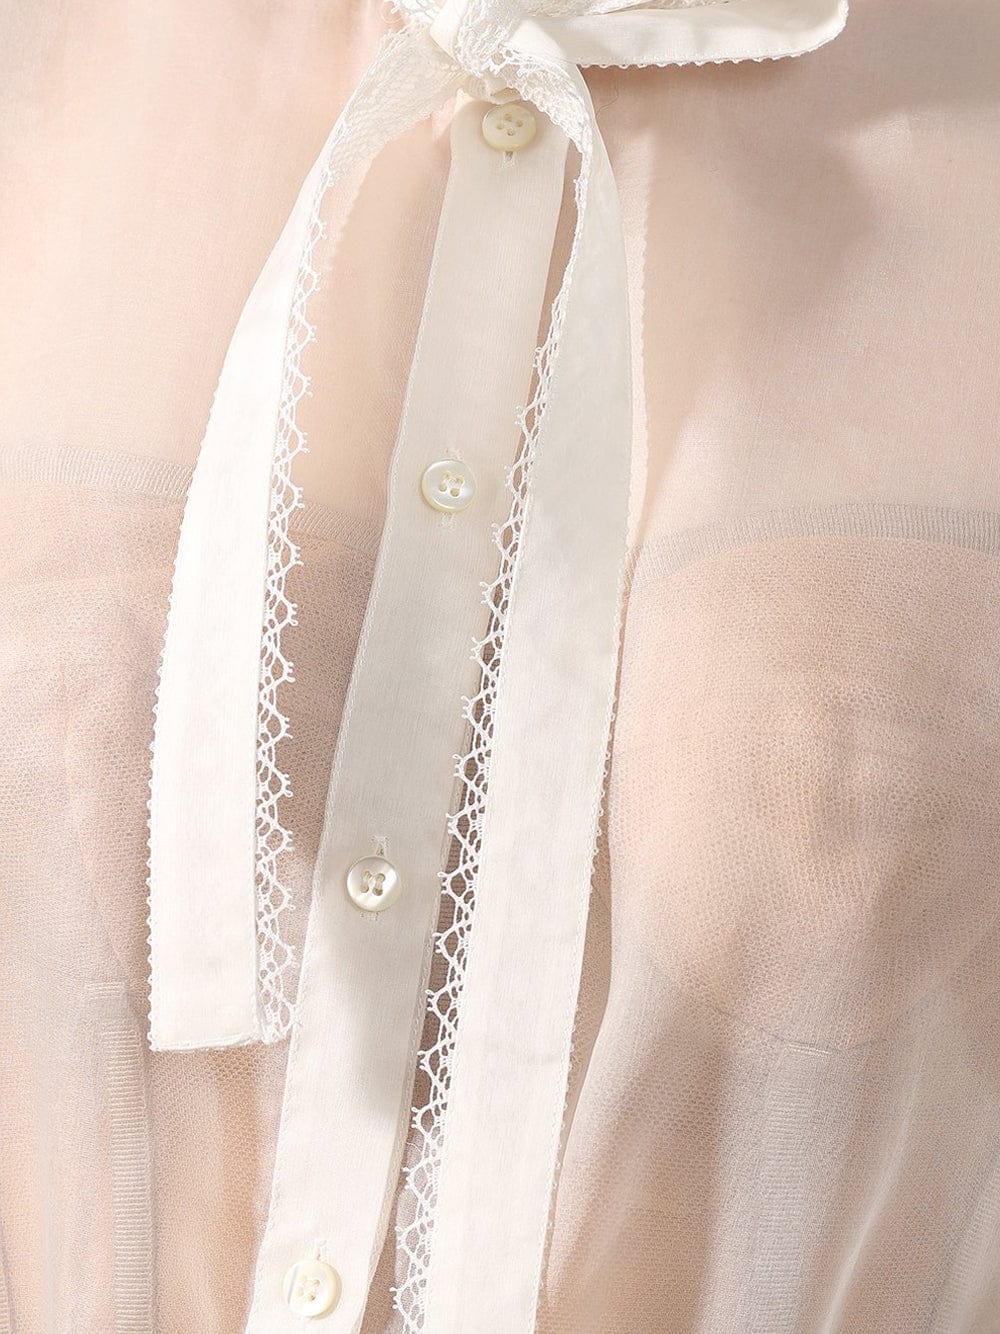 Dolce & Gabbana Silk Top with Tie Fastening